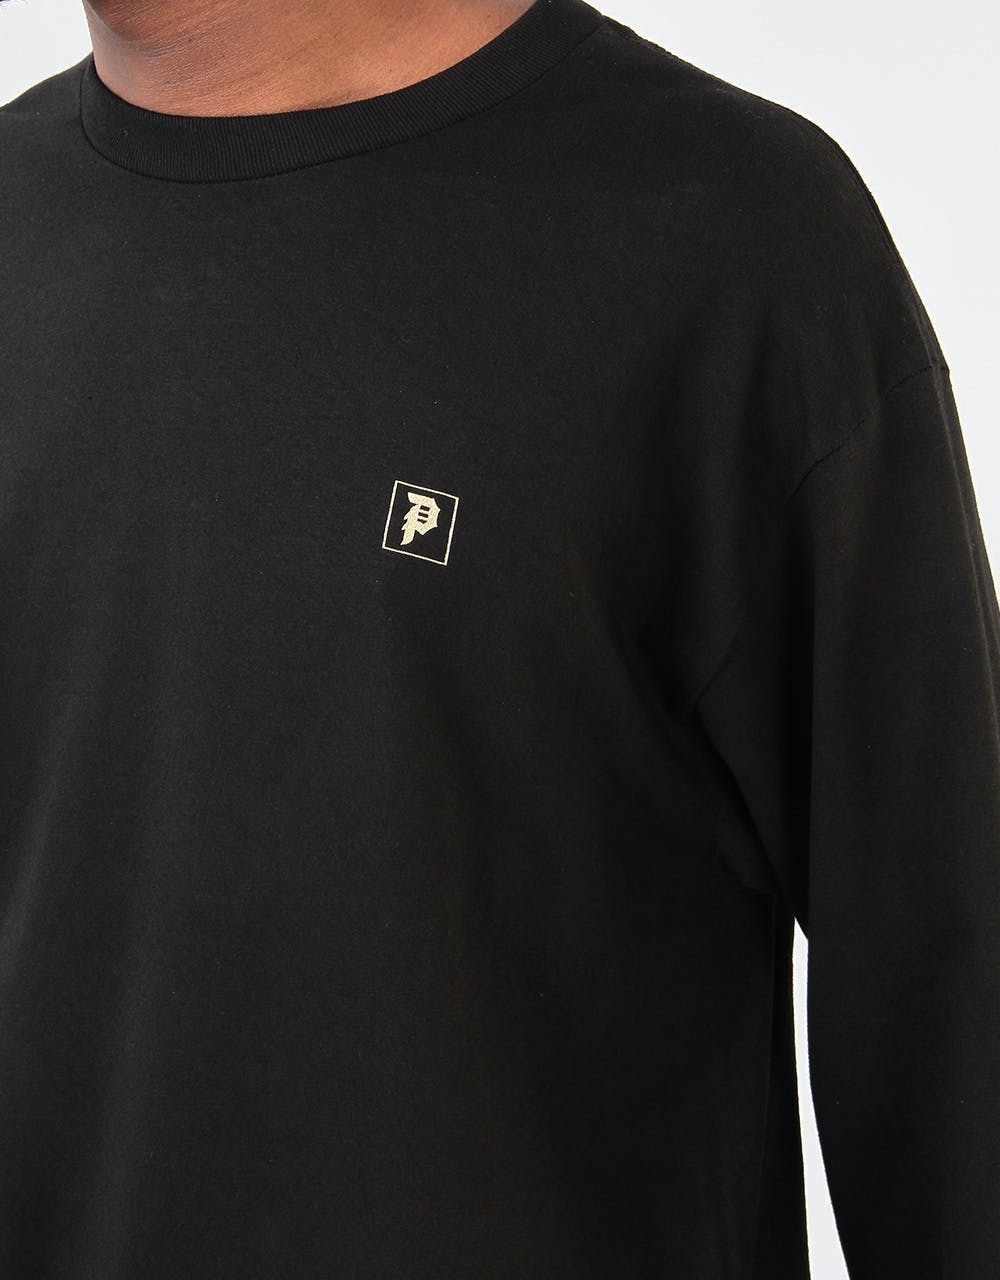 Primitive Rise L/S T-Shirt - Black